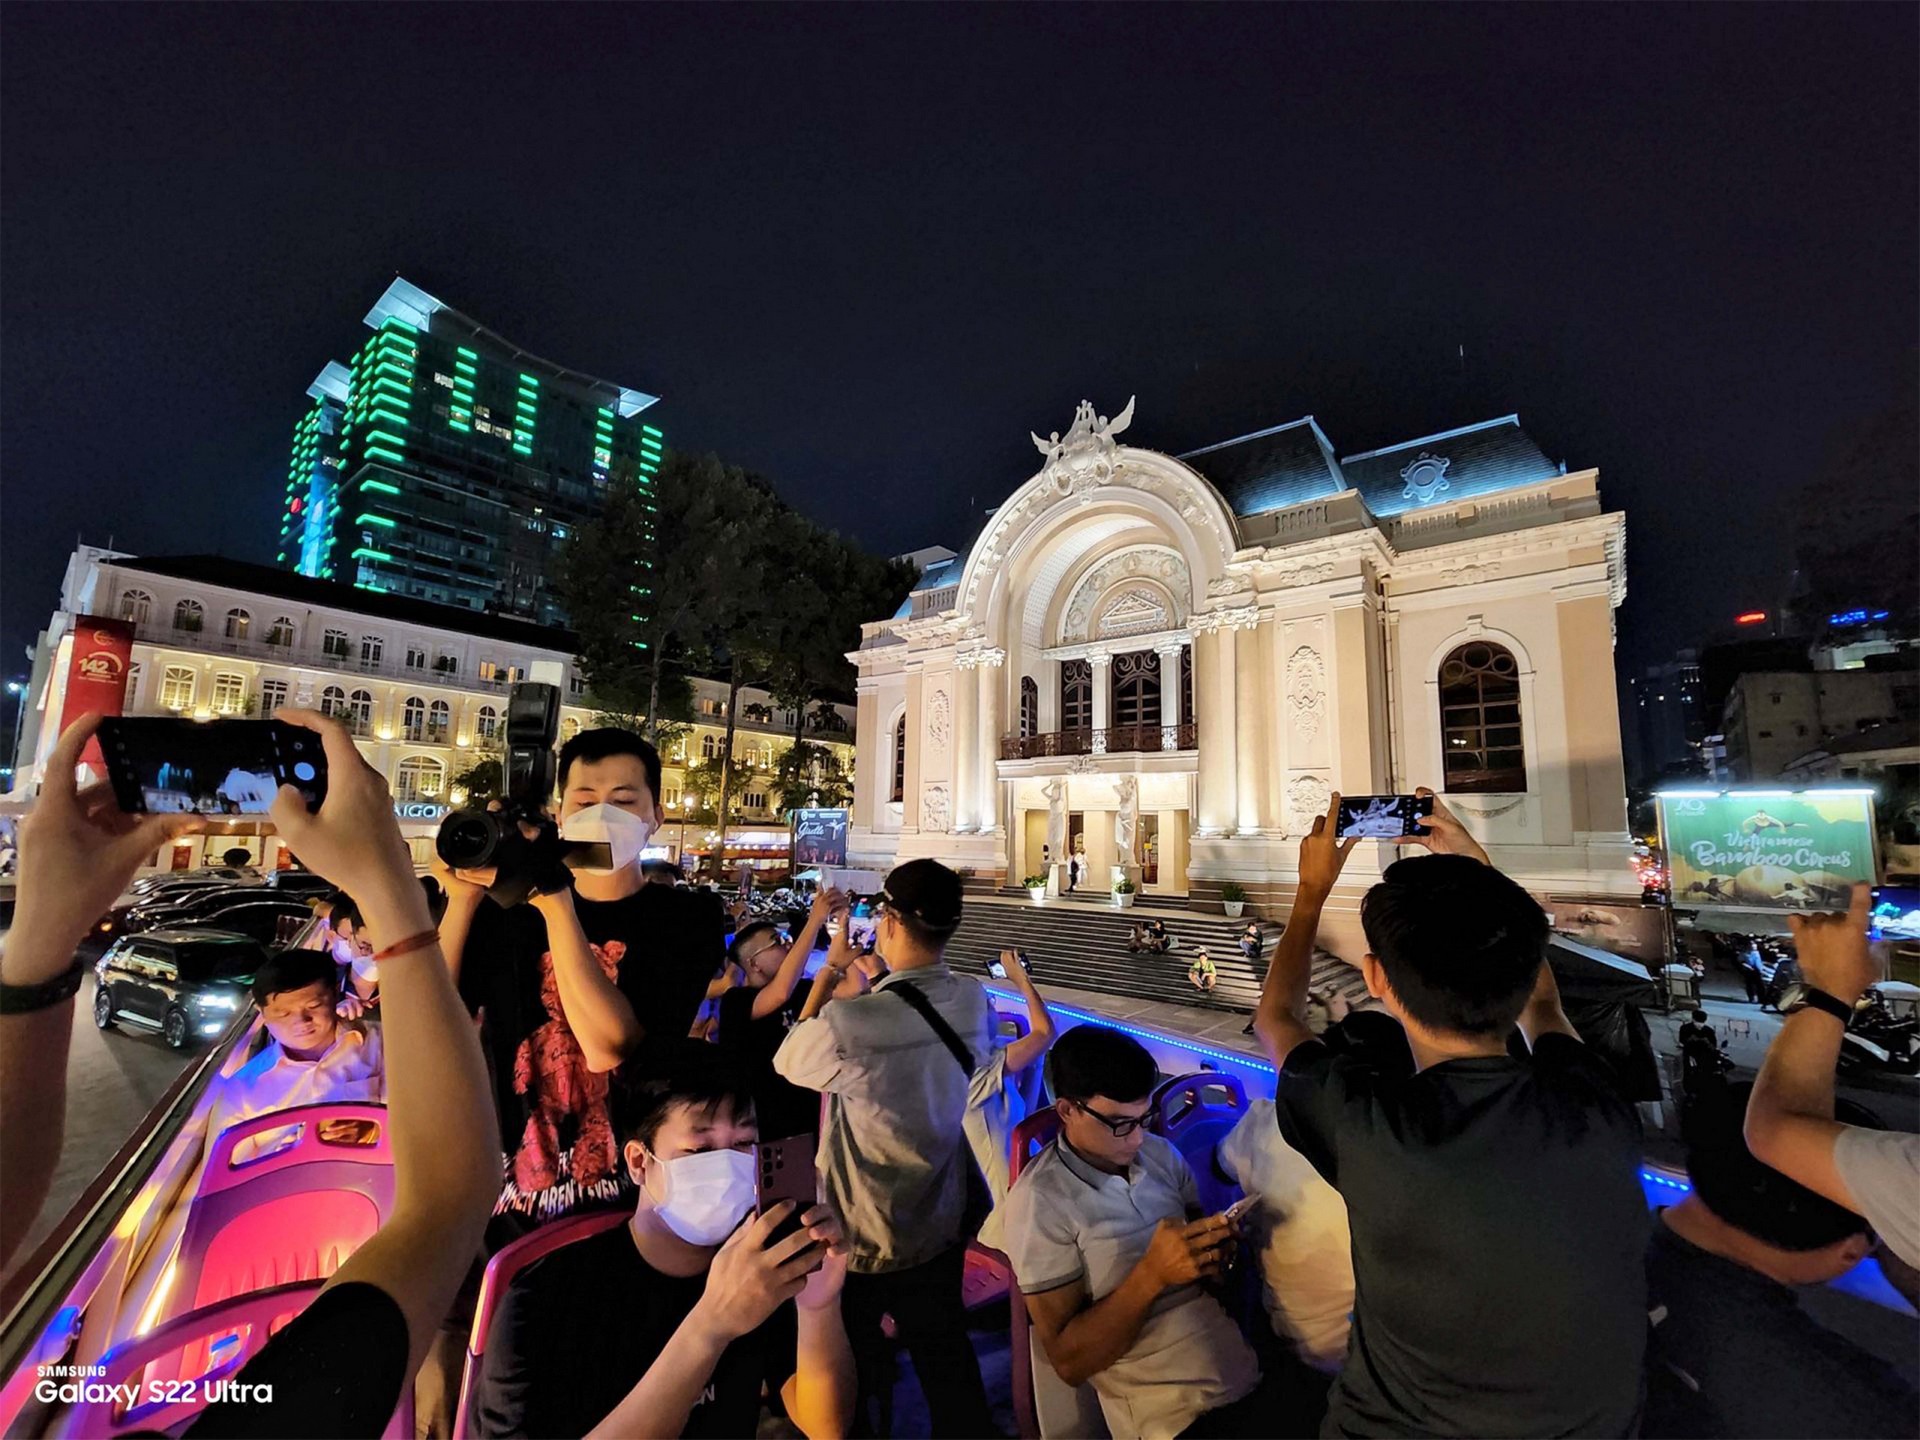 Trải nghiệm chụp hình Sống Đậm Chất Đêm: Ngắm Sài Gòn về đêm qua ống kính Galaxy S22 Ultra